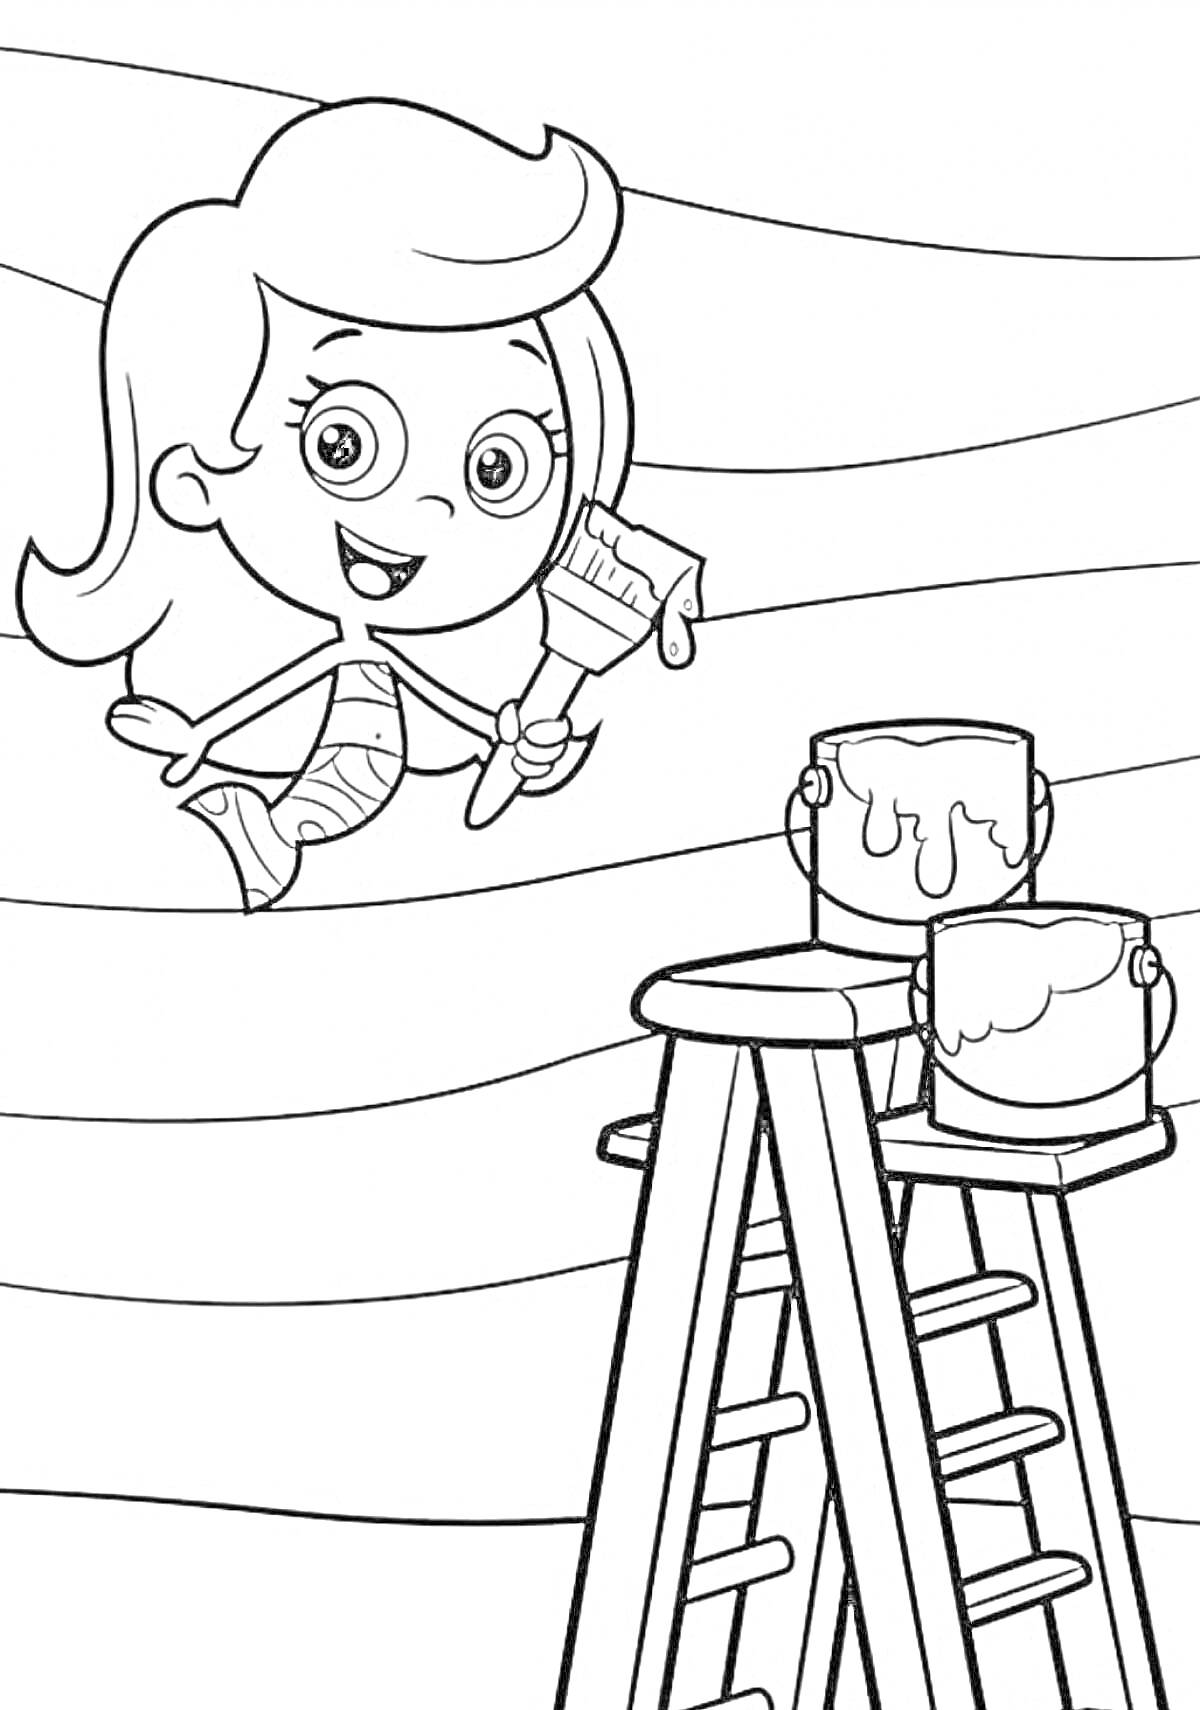 Мальчик-гуппи с кисточкой, банками краски и лестницей